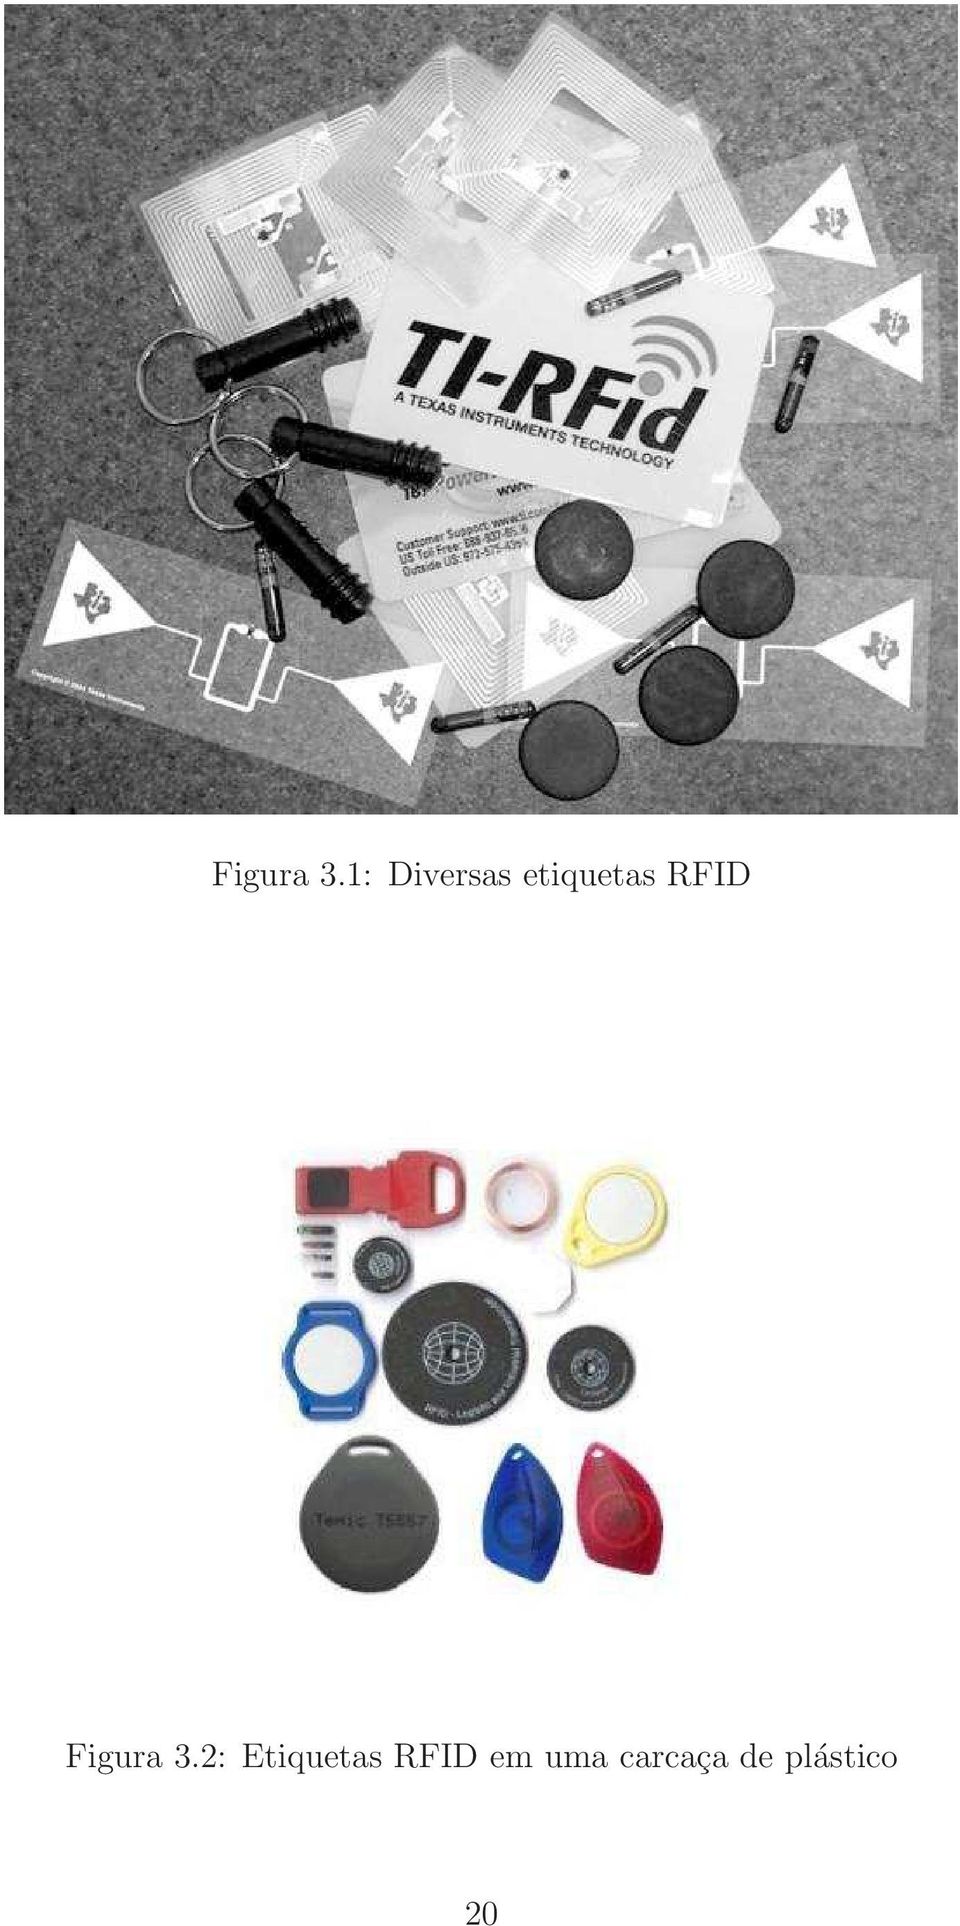 RFID 2: Etiquetas RFID